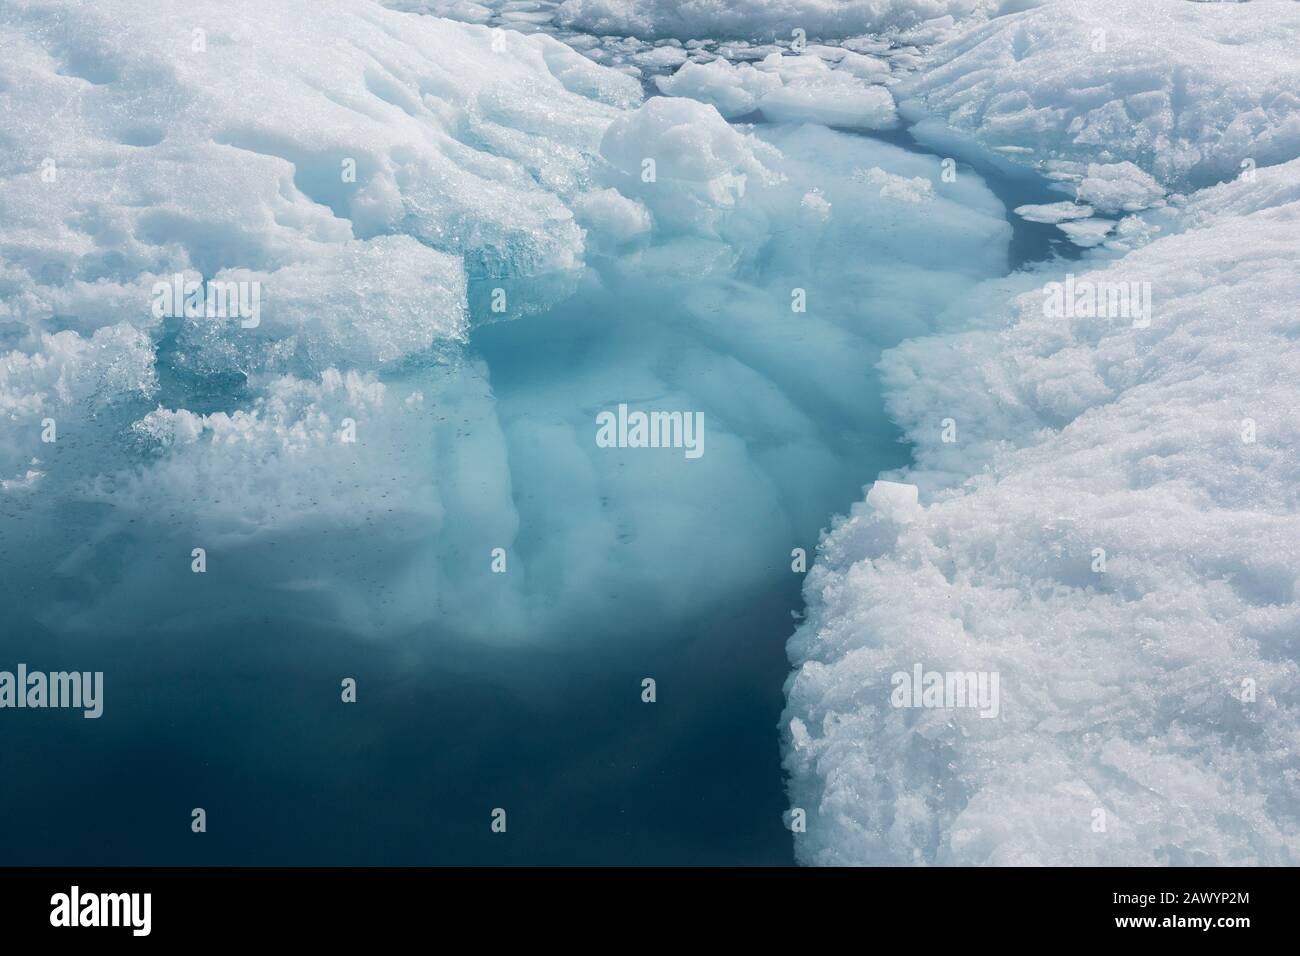 Fonte de la glace polaire Groenland Banque D'Images